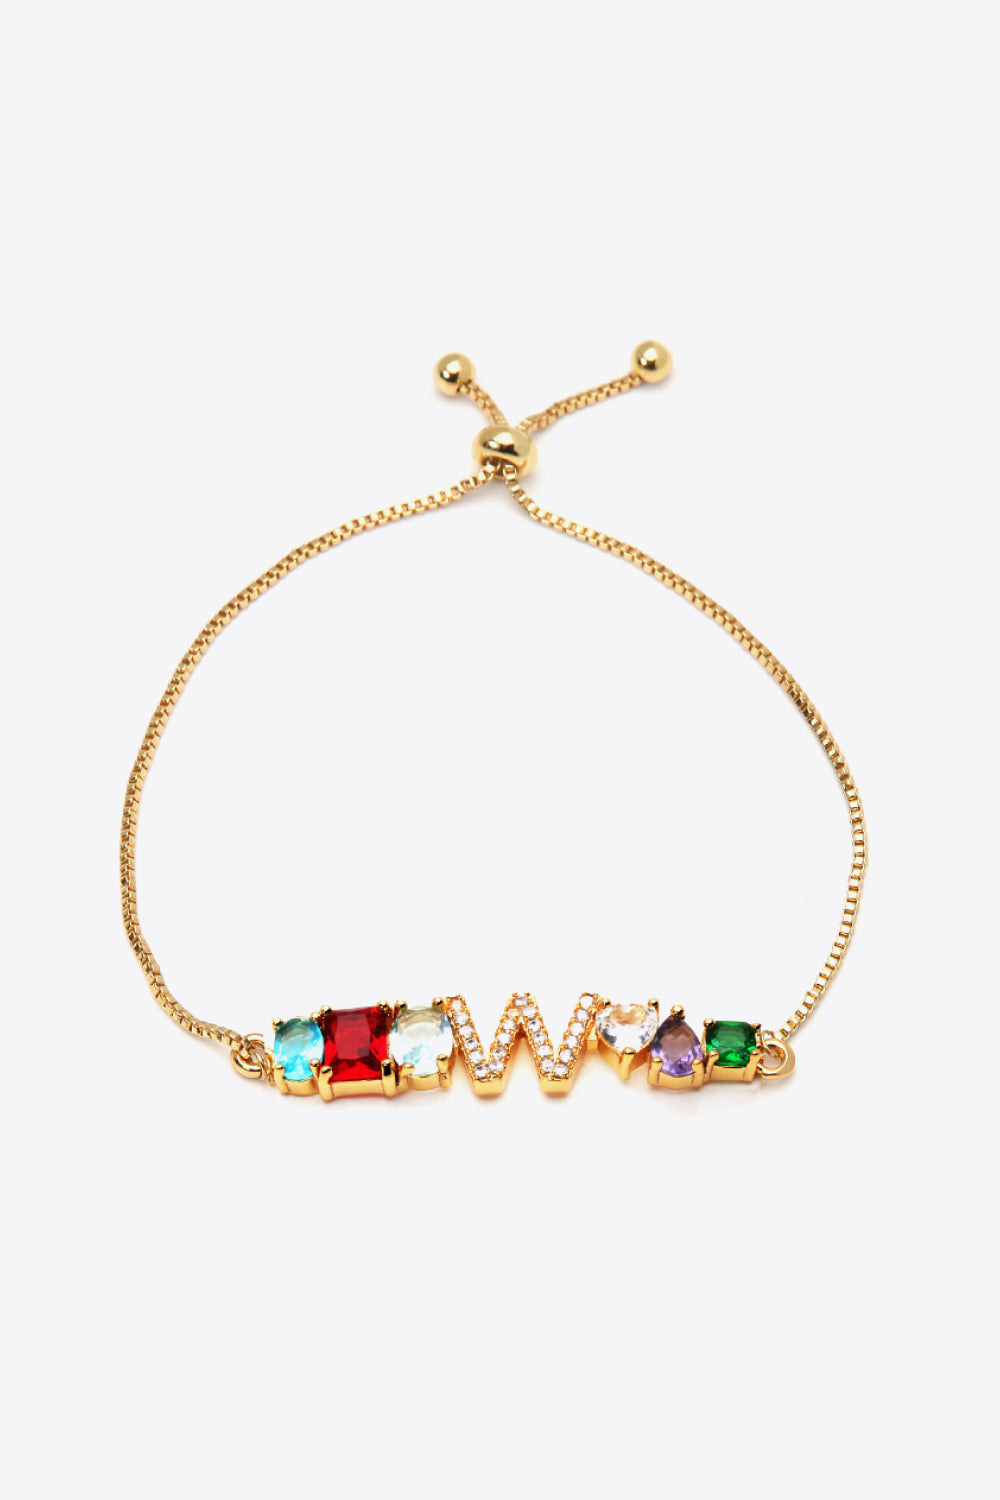 U to Z Zircon Bracelet - W / One Size - Women’s Jewelry - Bracelets - 7 - 2024